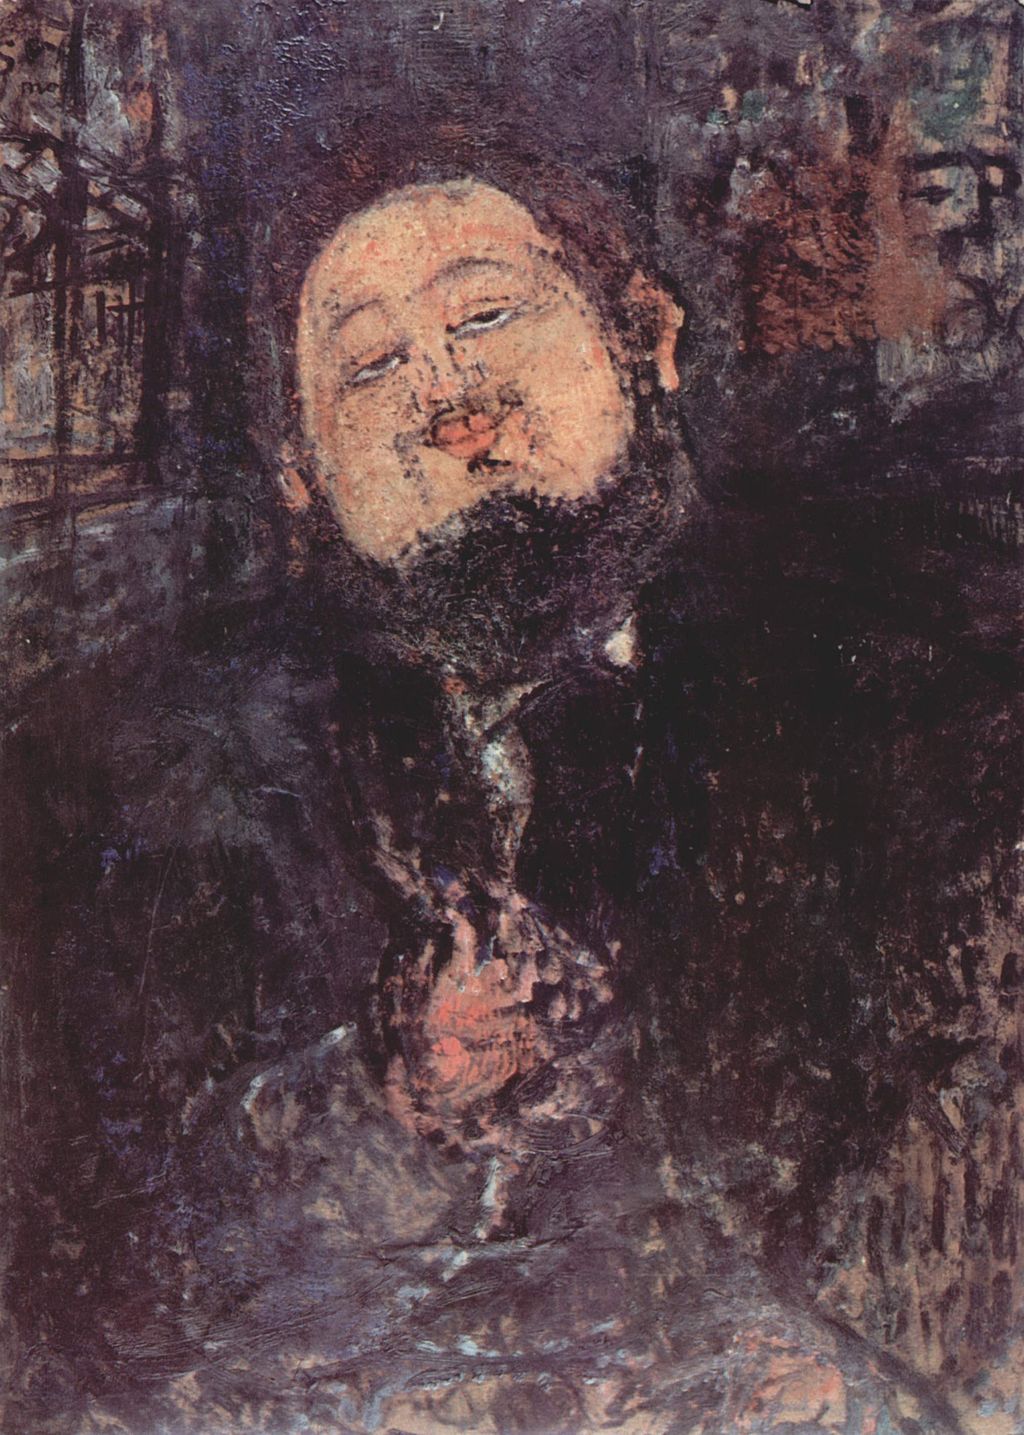 Portrait of Diego Rivera by Amadeo Modigliani